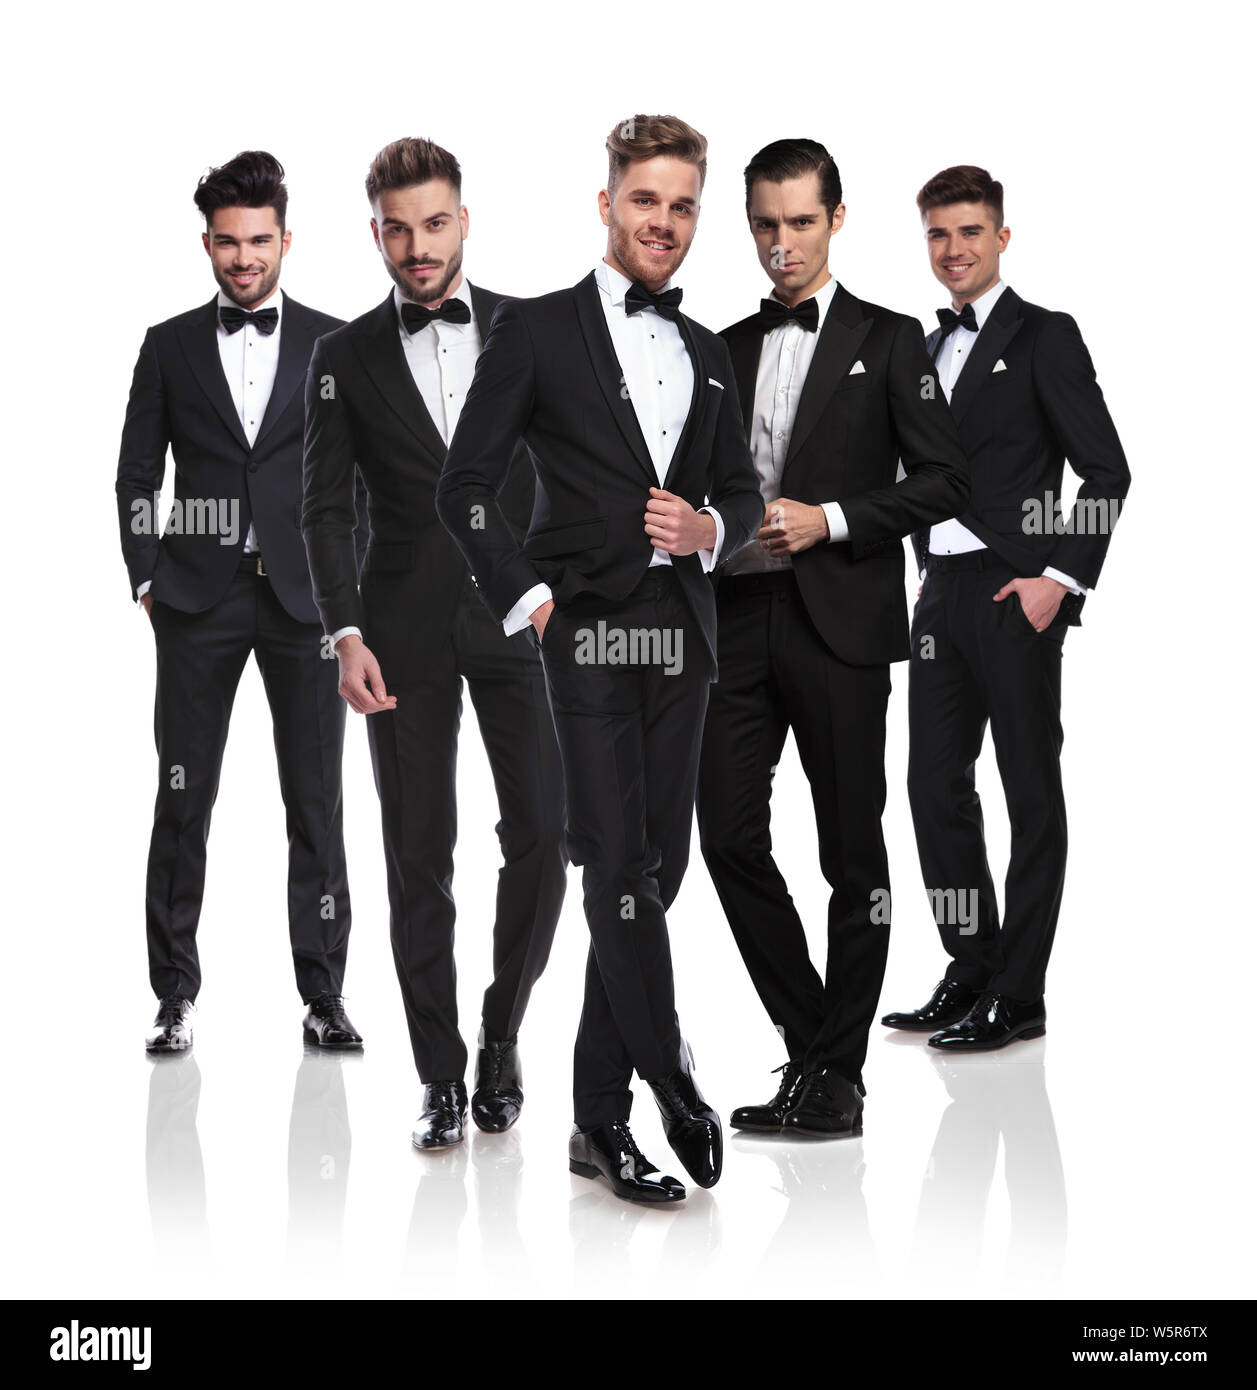 Équipe de cinq garçons vêtus de noir sur fond blanc permanent tuxedoes avec leader à l'avant, un corps entier photo Banque D'Images